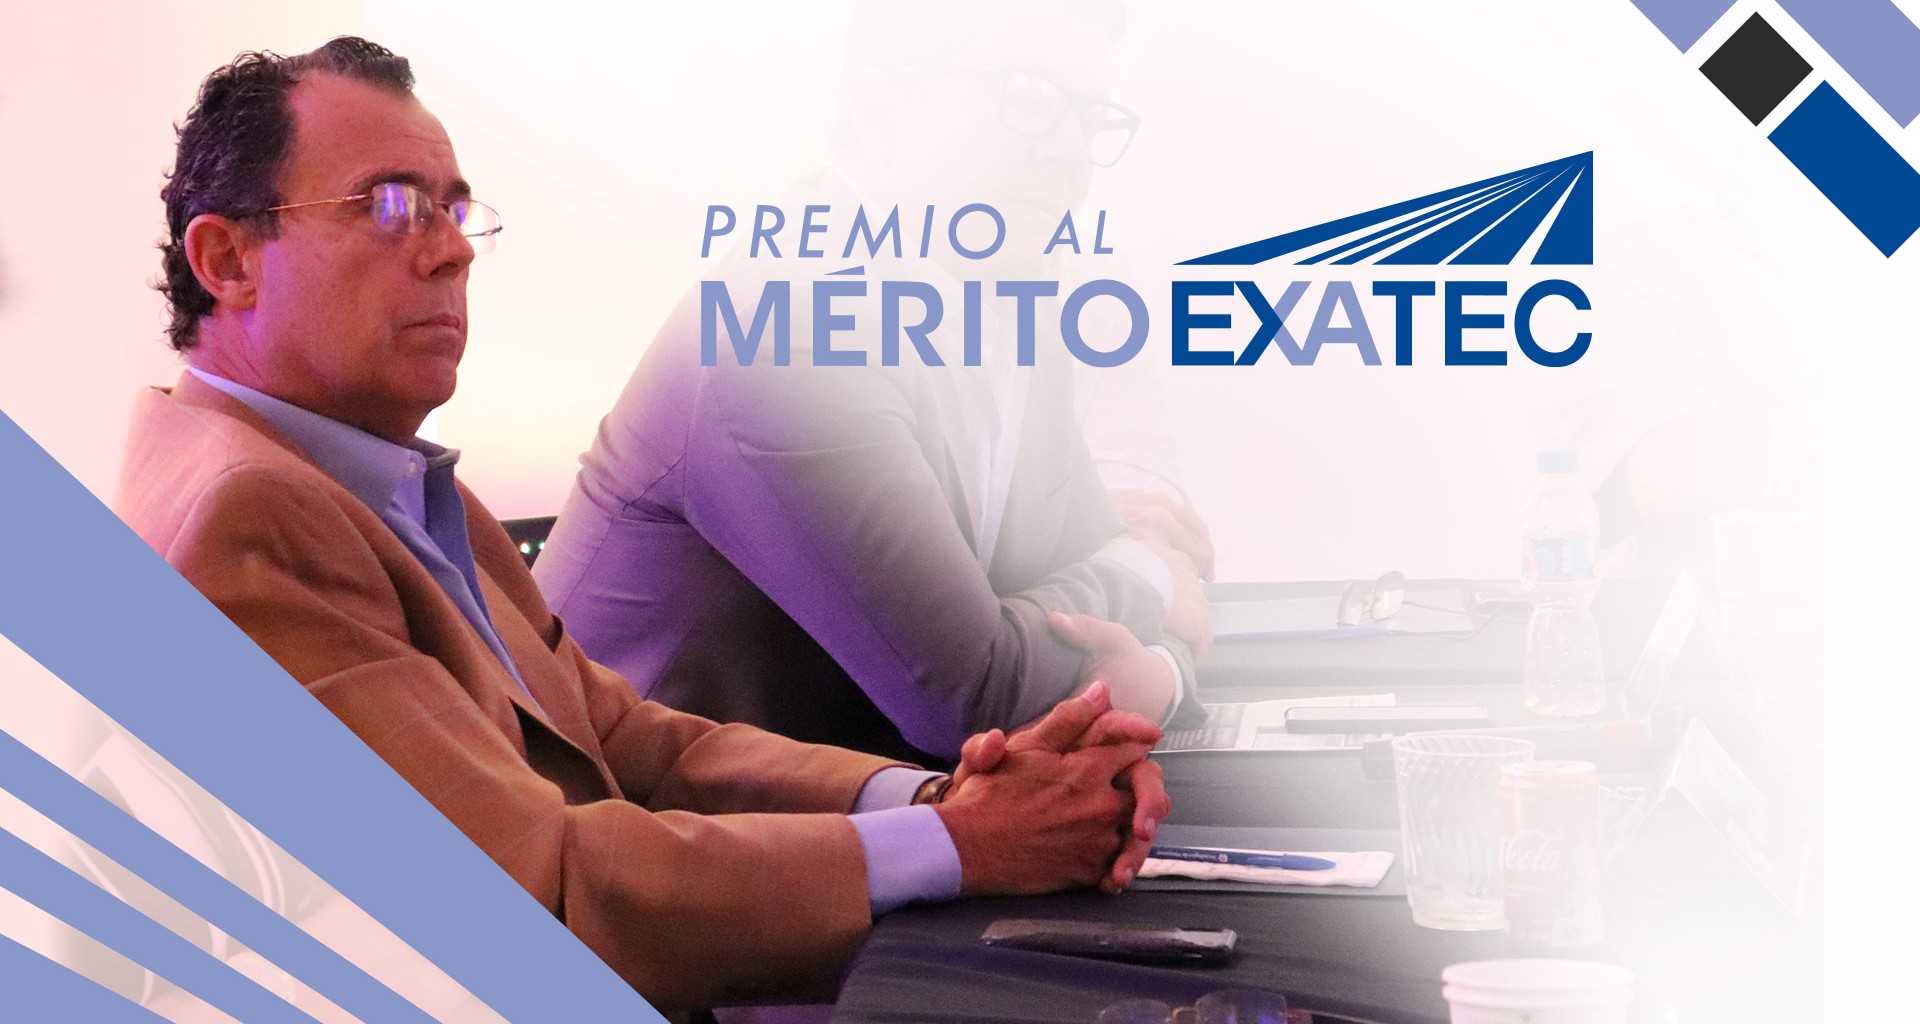 Ariel Obregón, galardonado al Merito EXATEC premio de Tec de Monterrey campus Ciudad Obregón